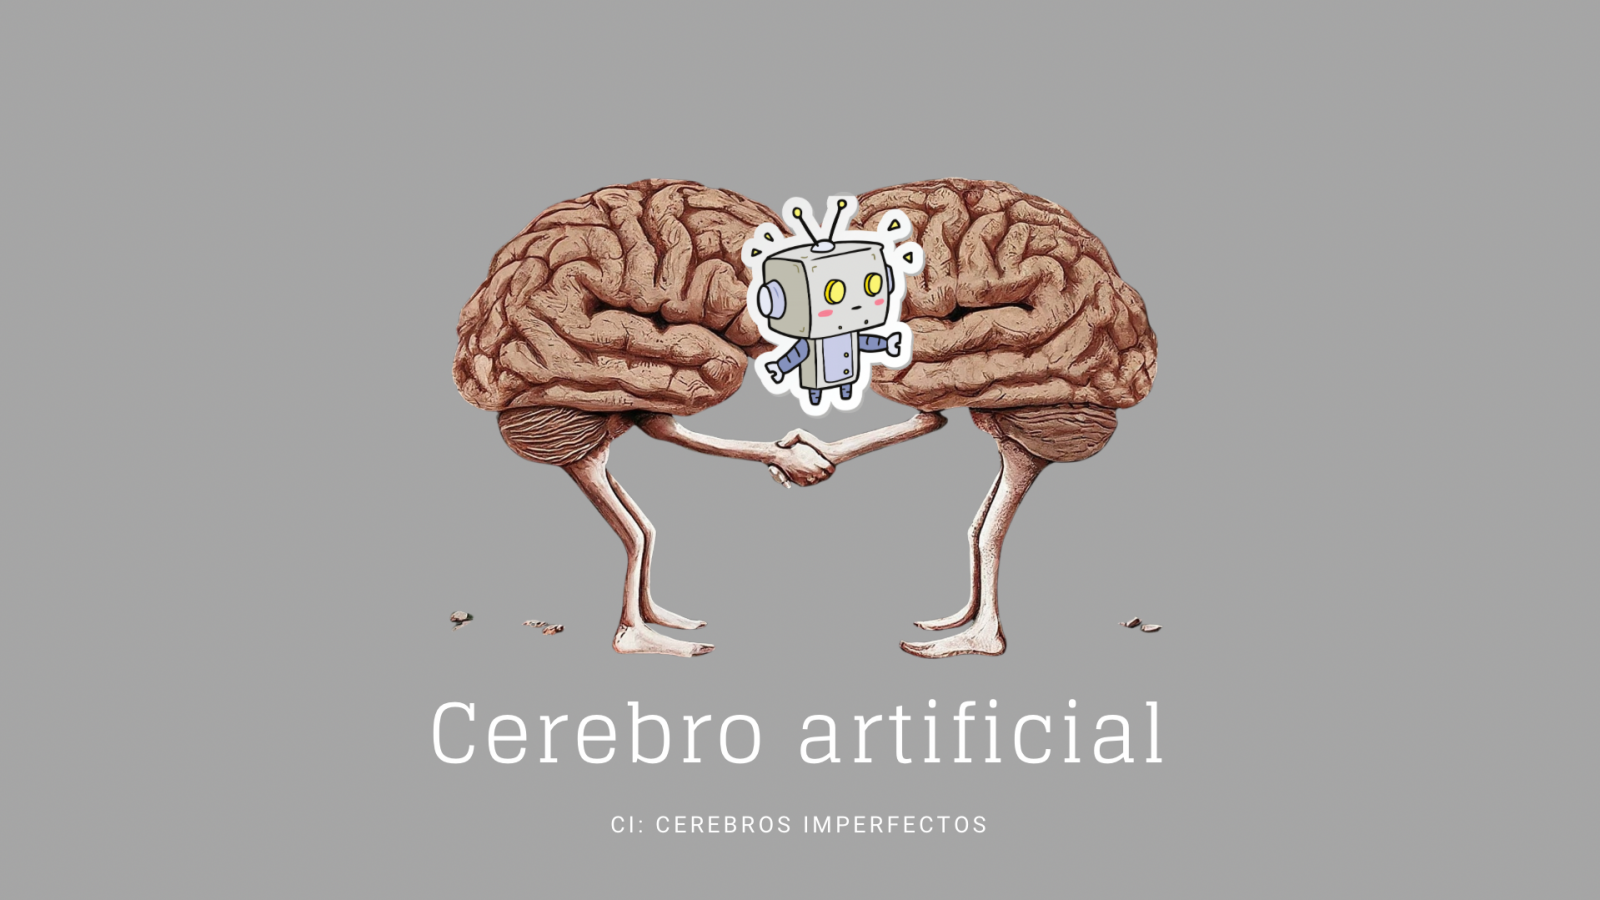 Cerebros imperfectos - Cerebro artificial - Escuchar ahora